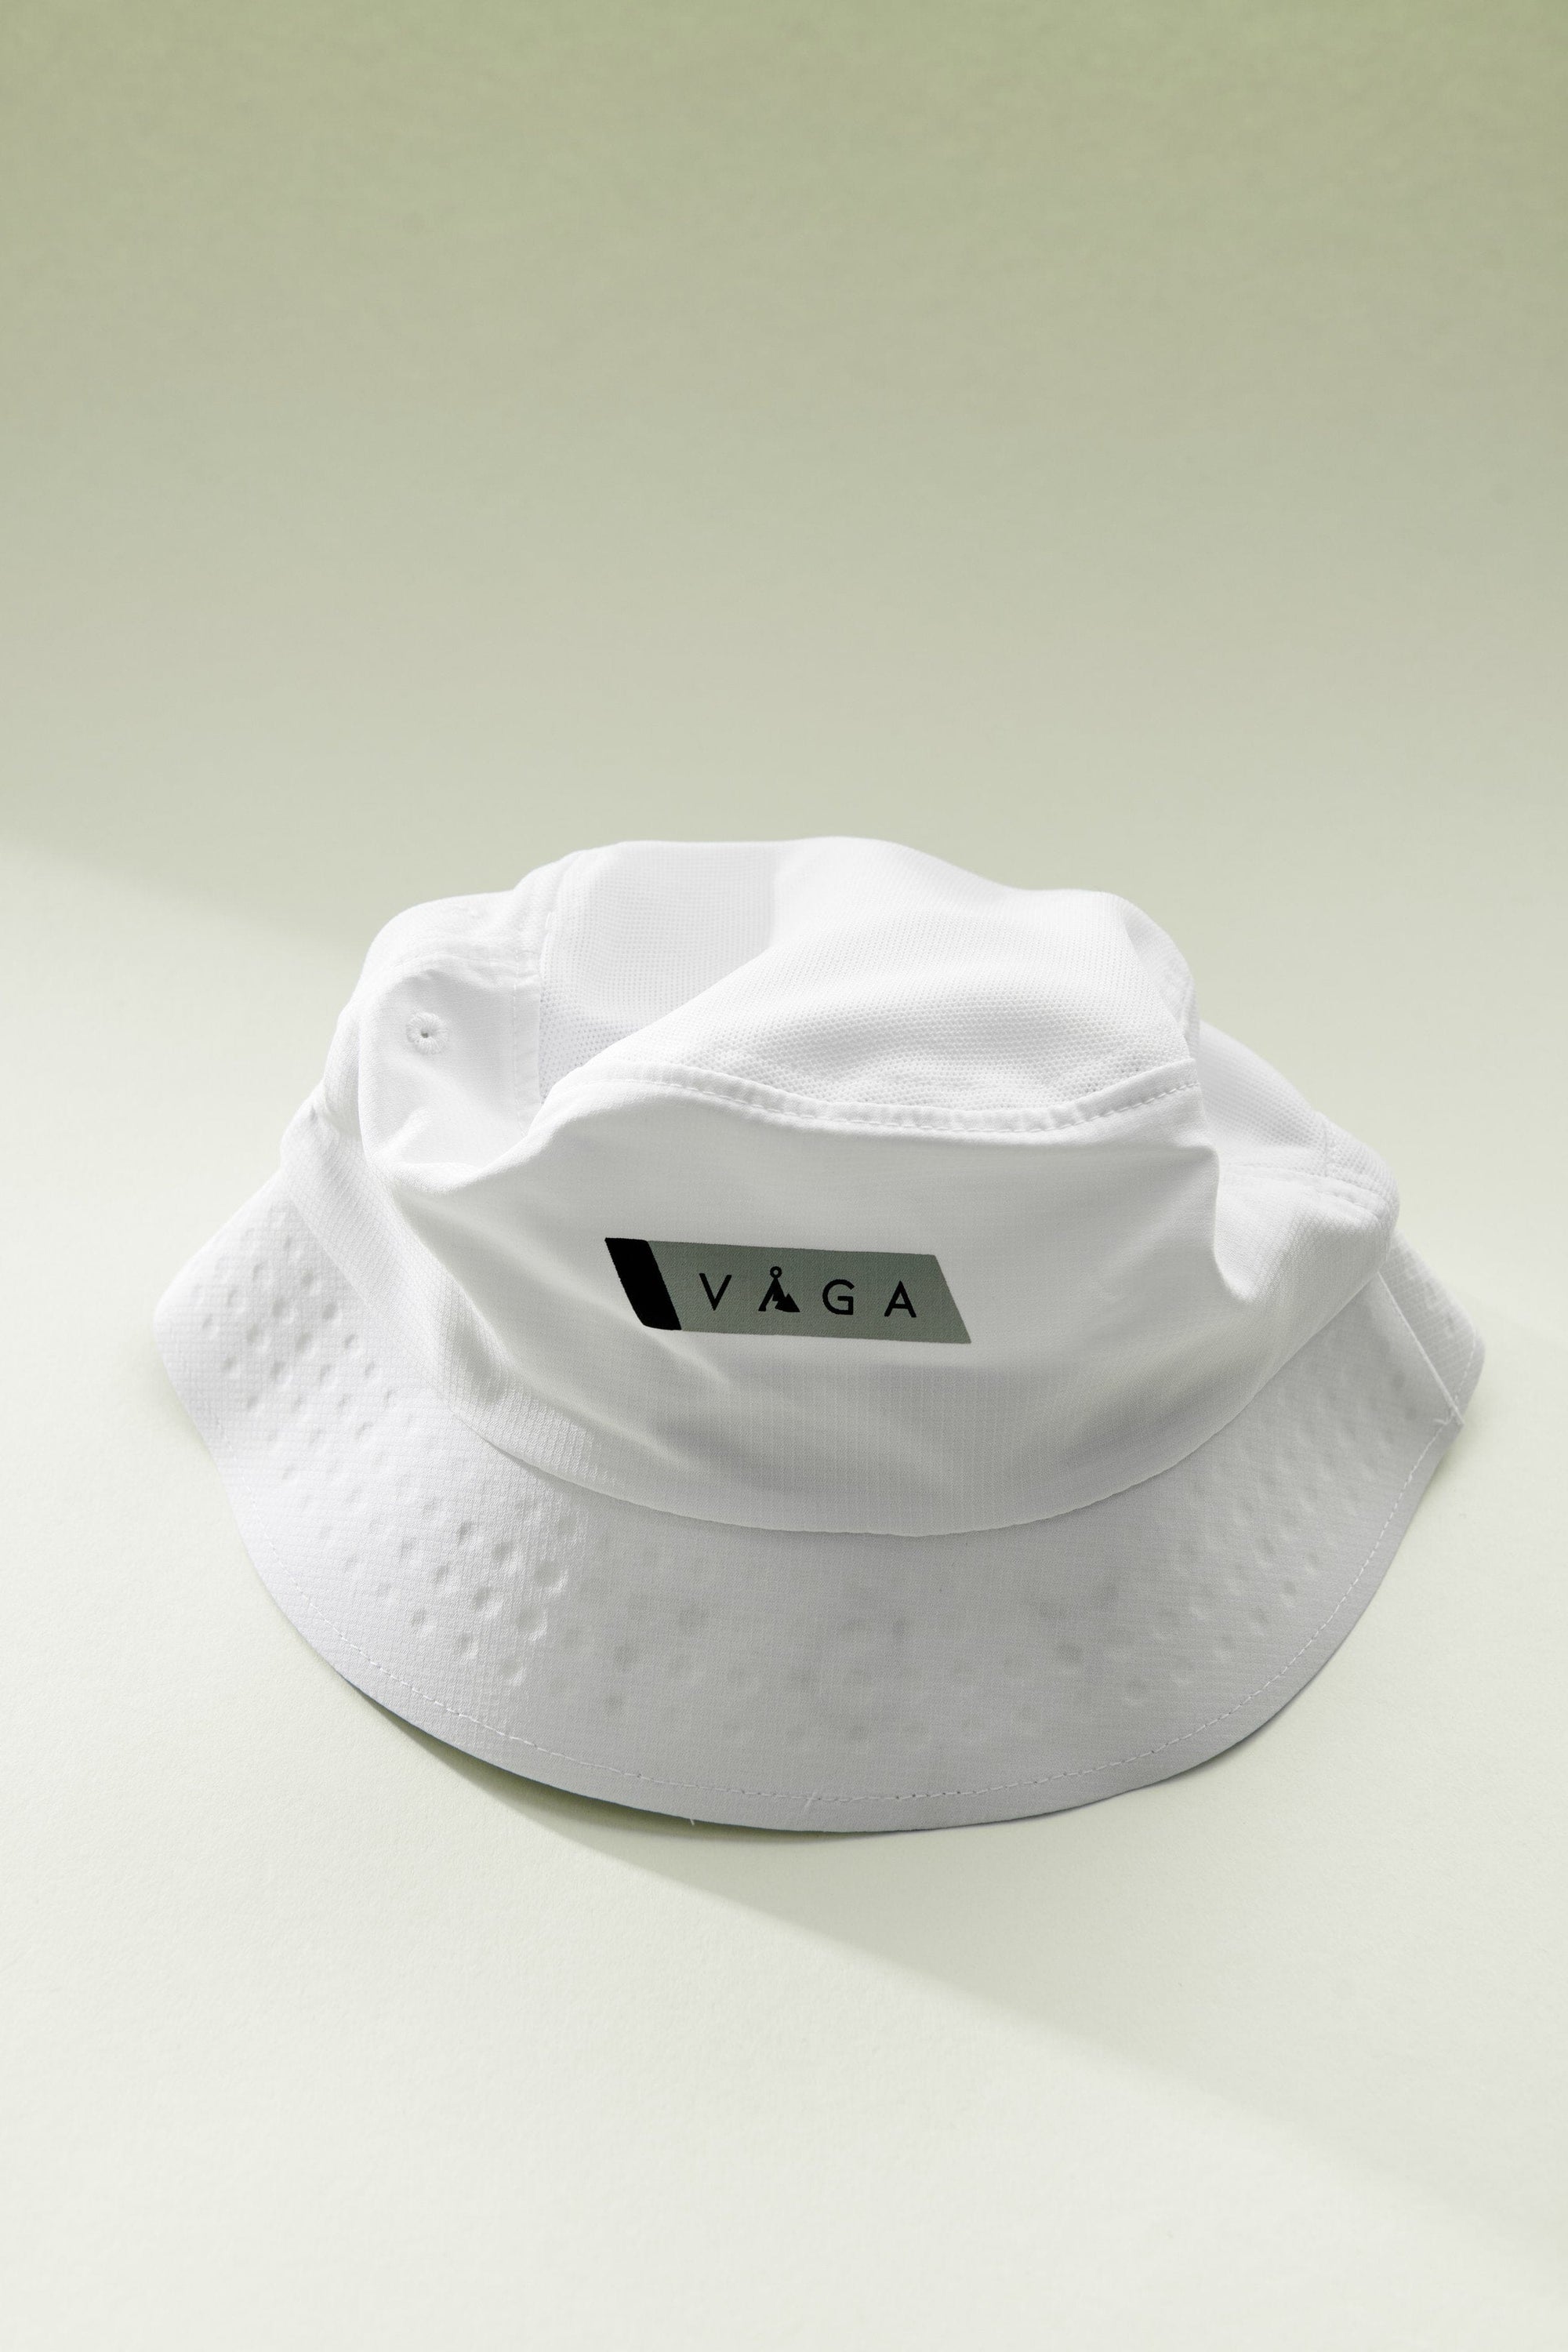 VAGA Feather Bucket Hat White/Mist Grey /Black S/M 